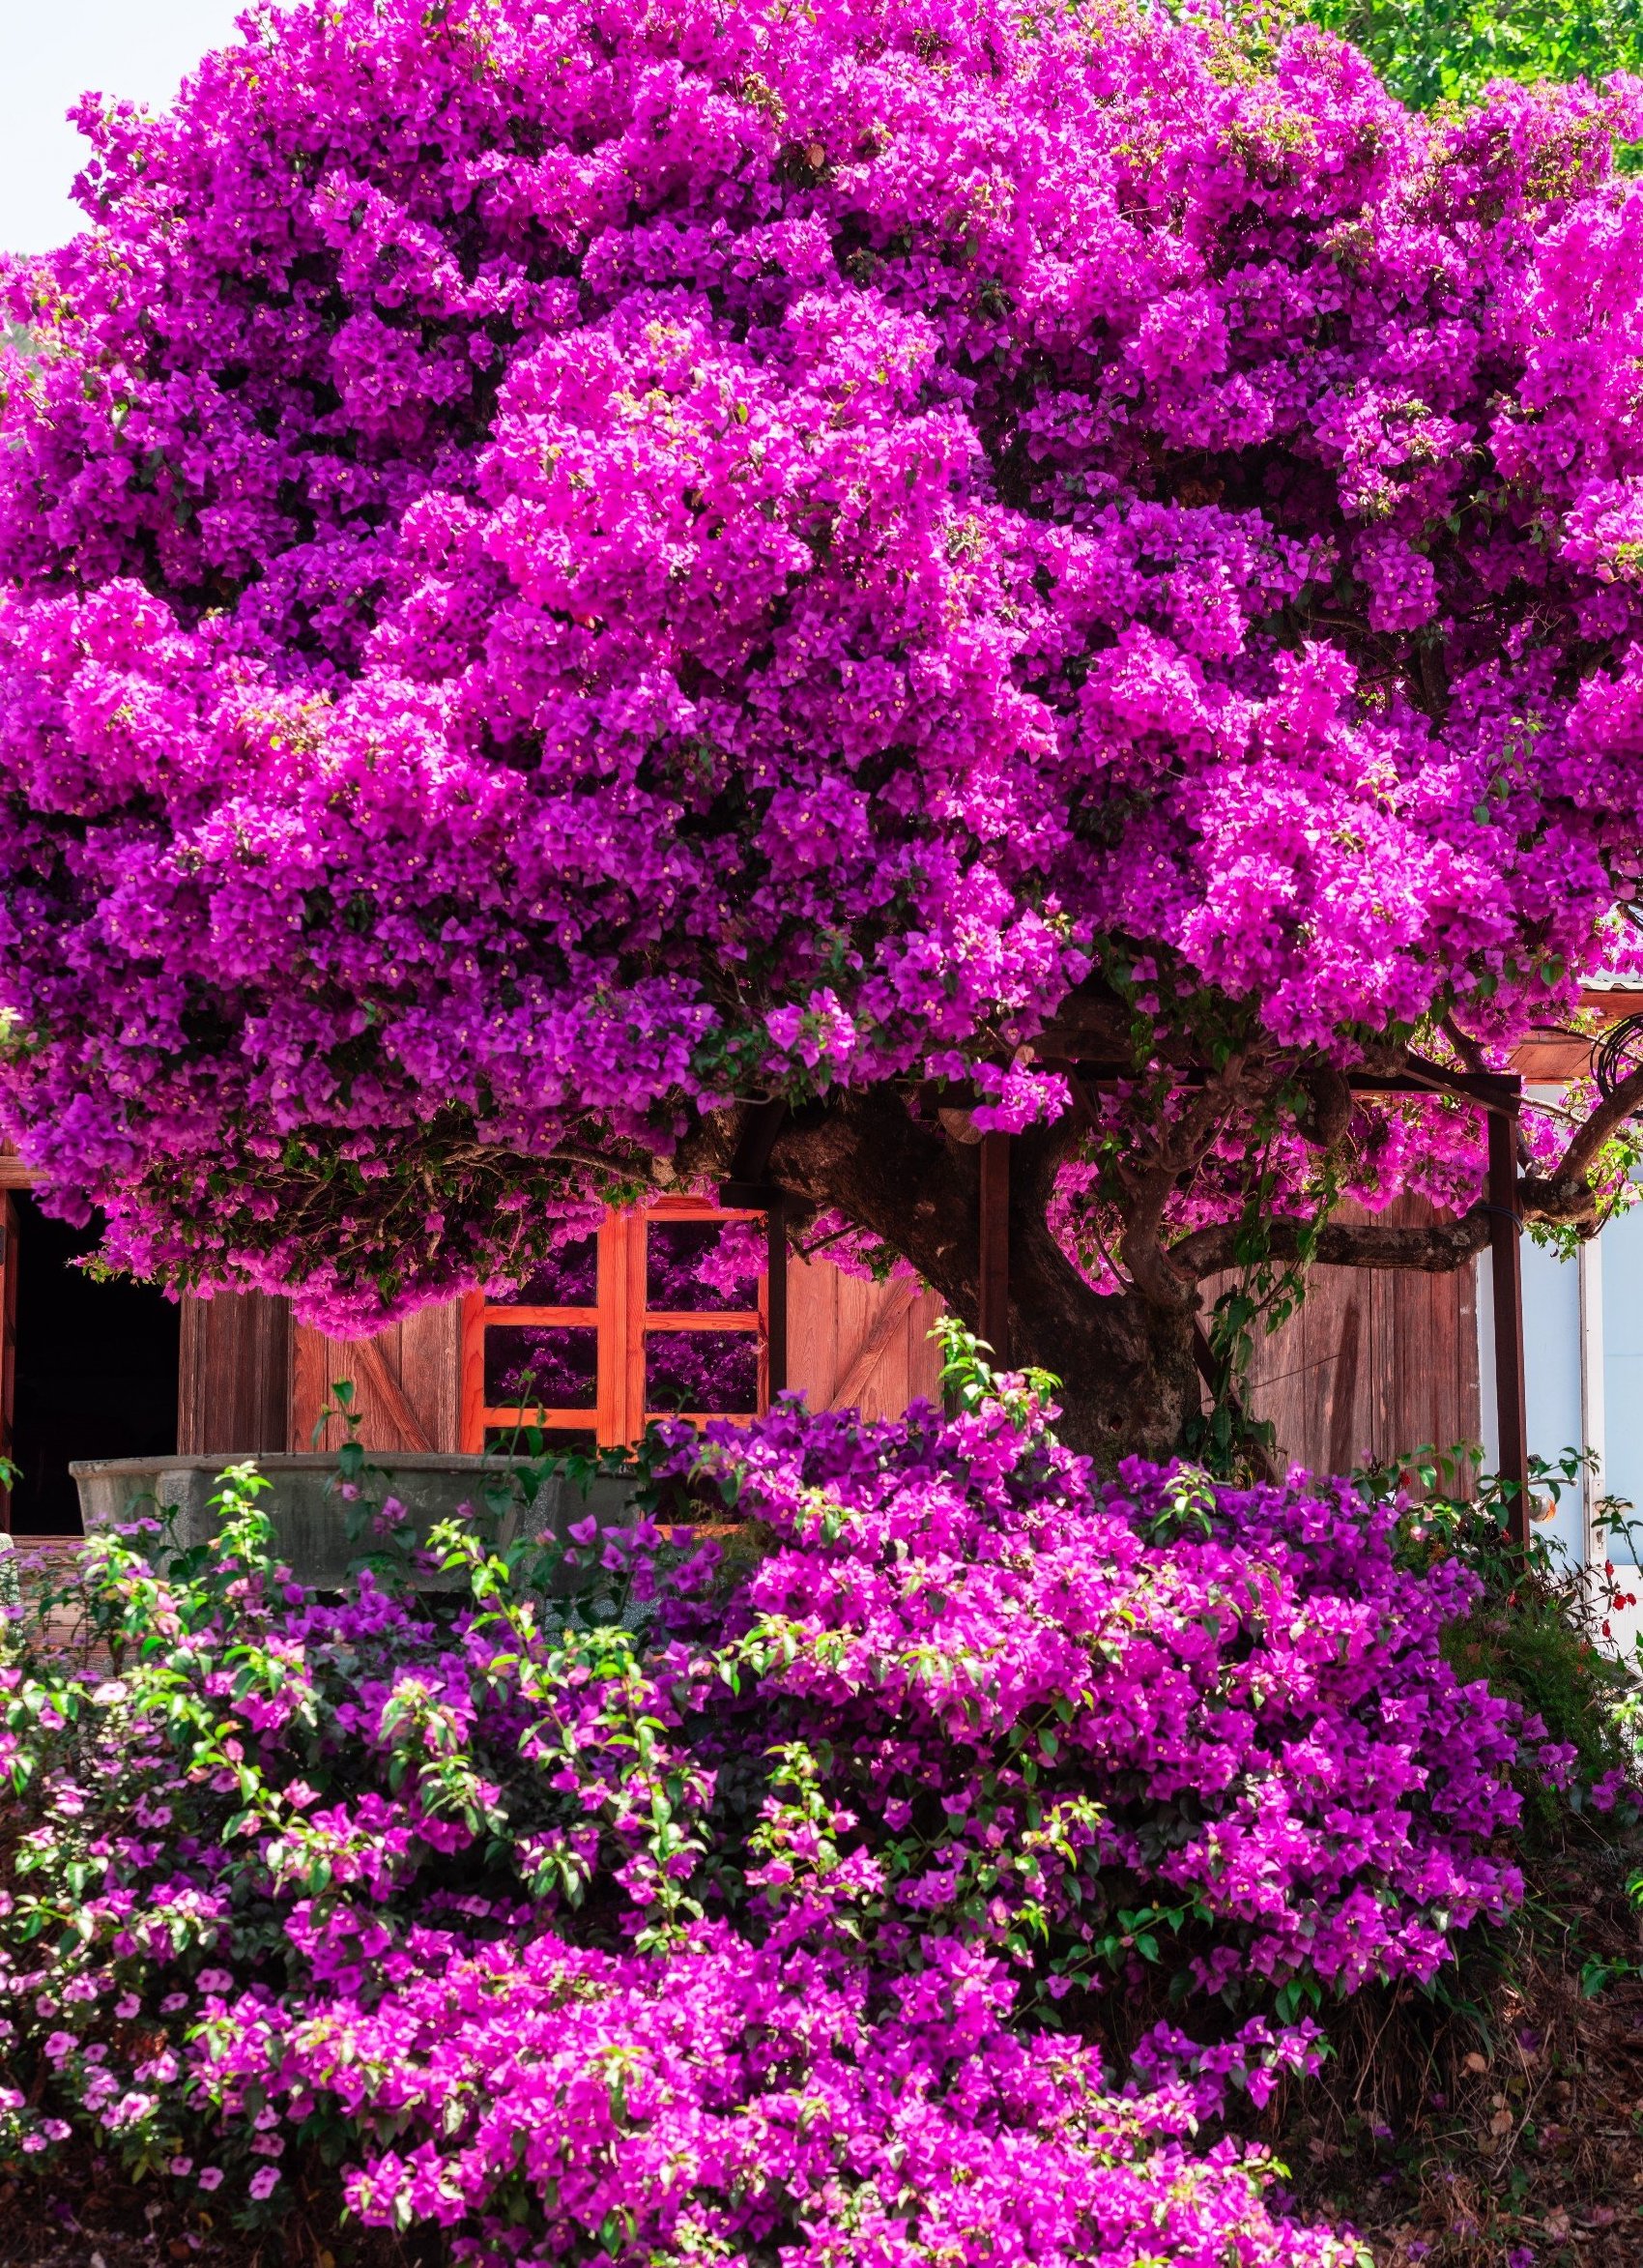 Dù nhìn xa hay gần thì cây hoa giấy như 1 bông màu tím khổng lồ nổi bật giữa vùng ngoại ô của Đà Lạt.